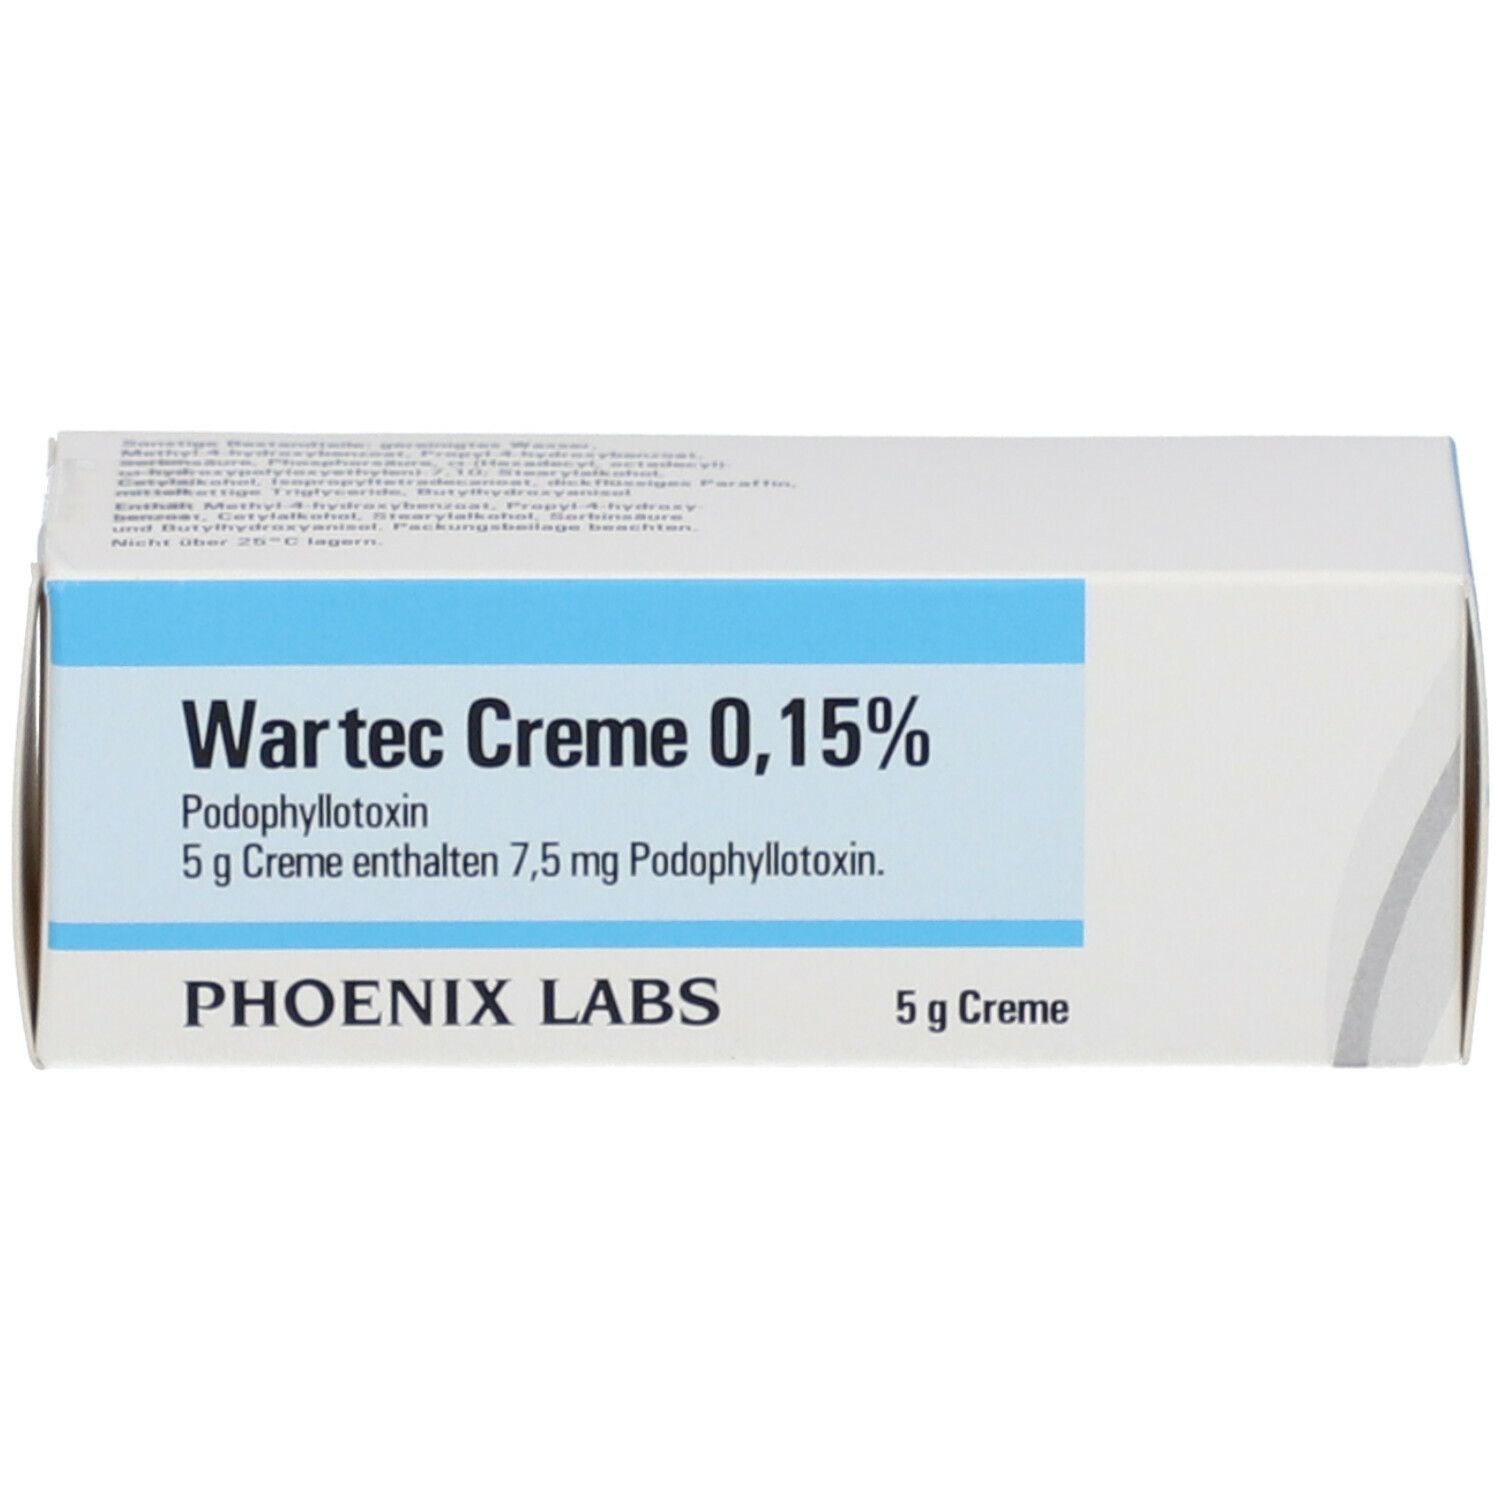 Wartec® Creme 0,15%